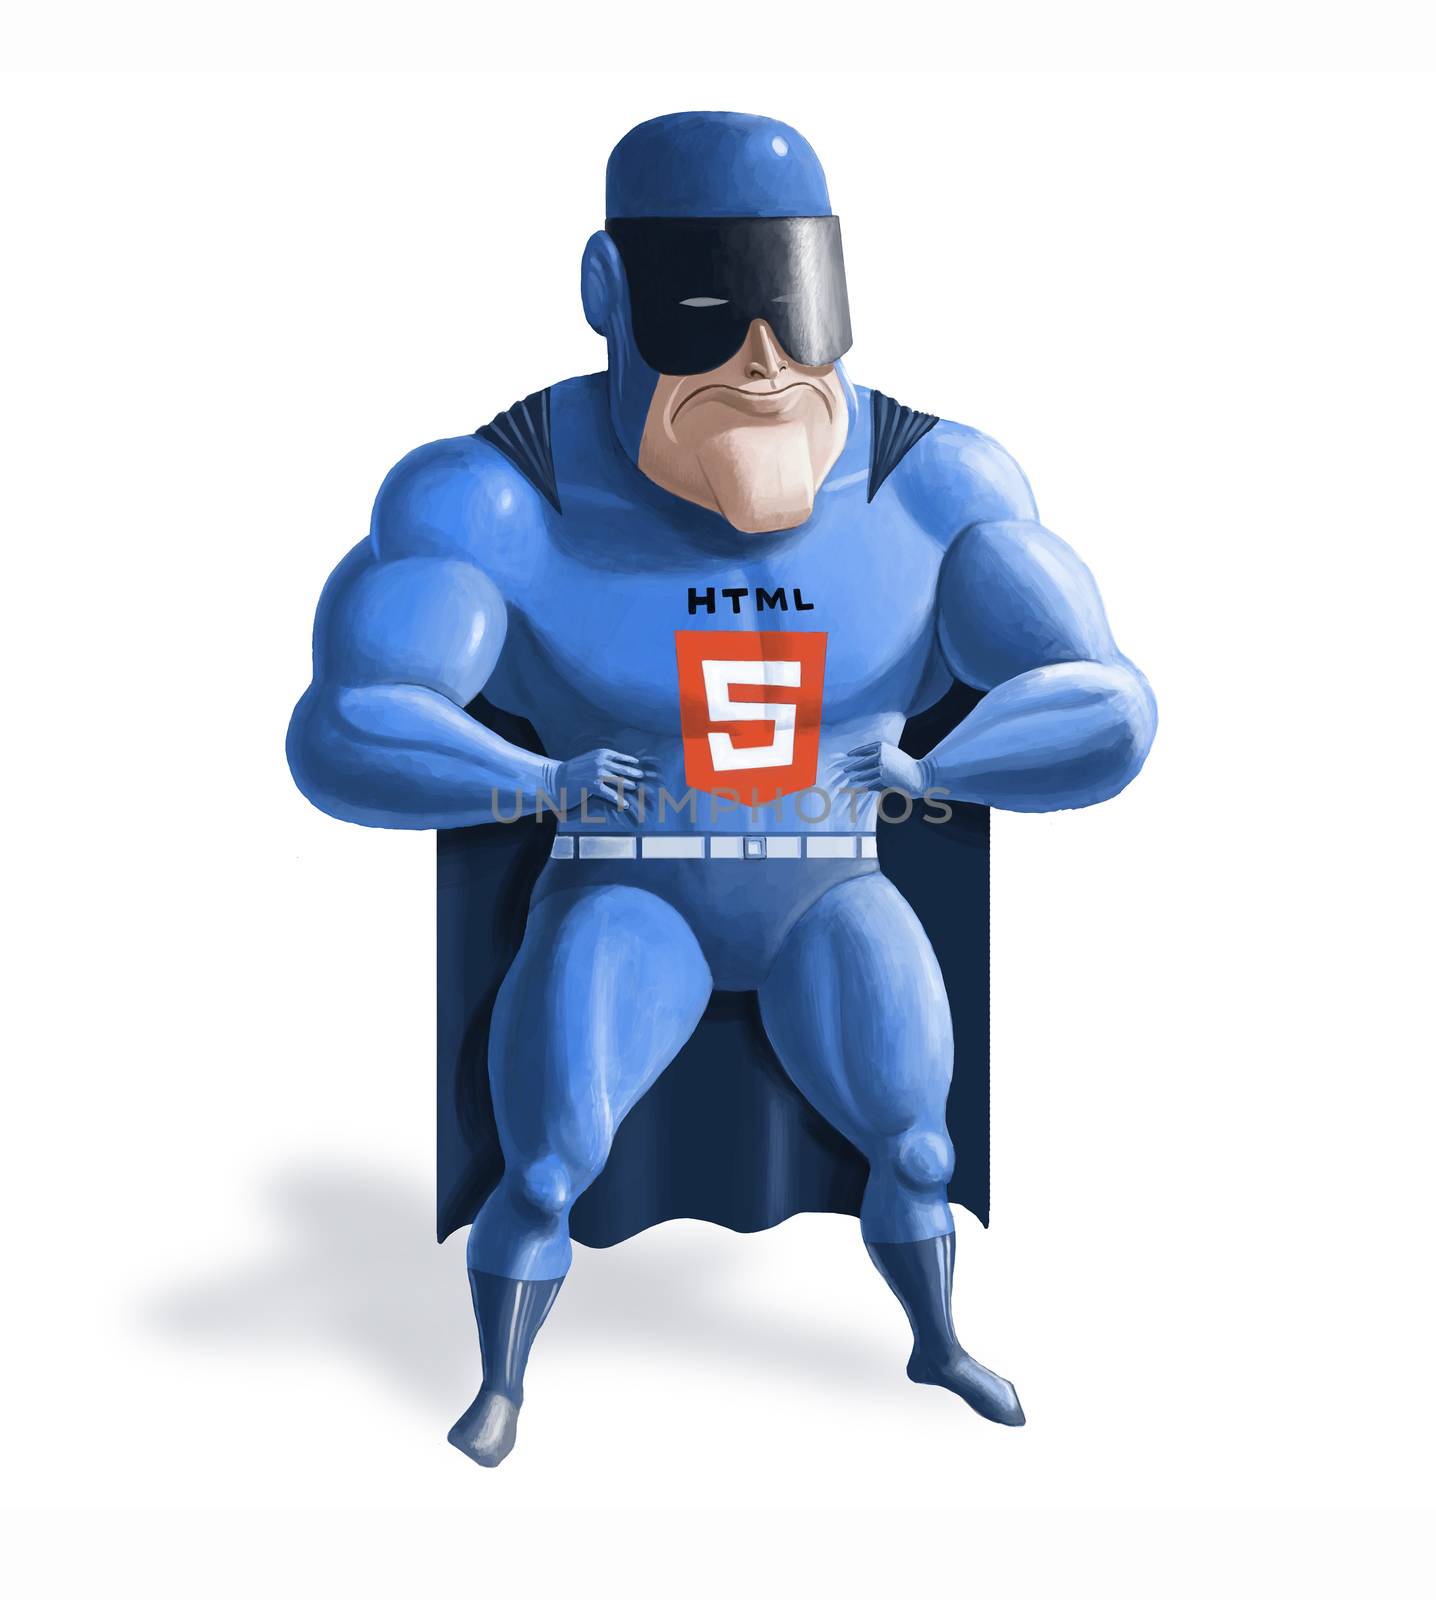 HTML5 superhero by Kepush